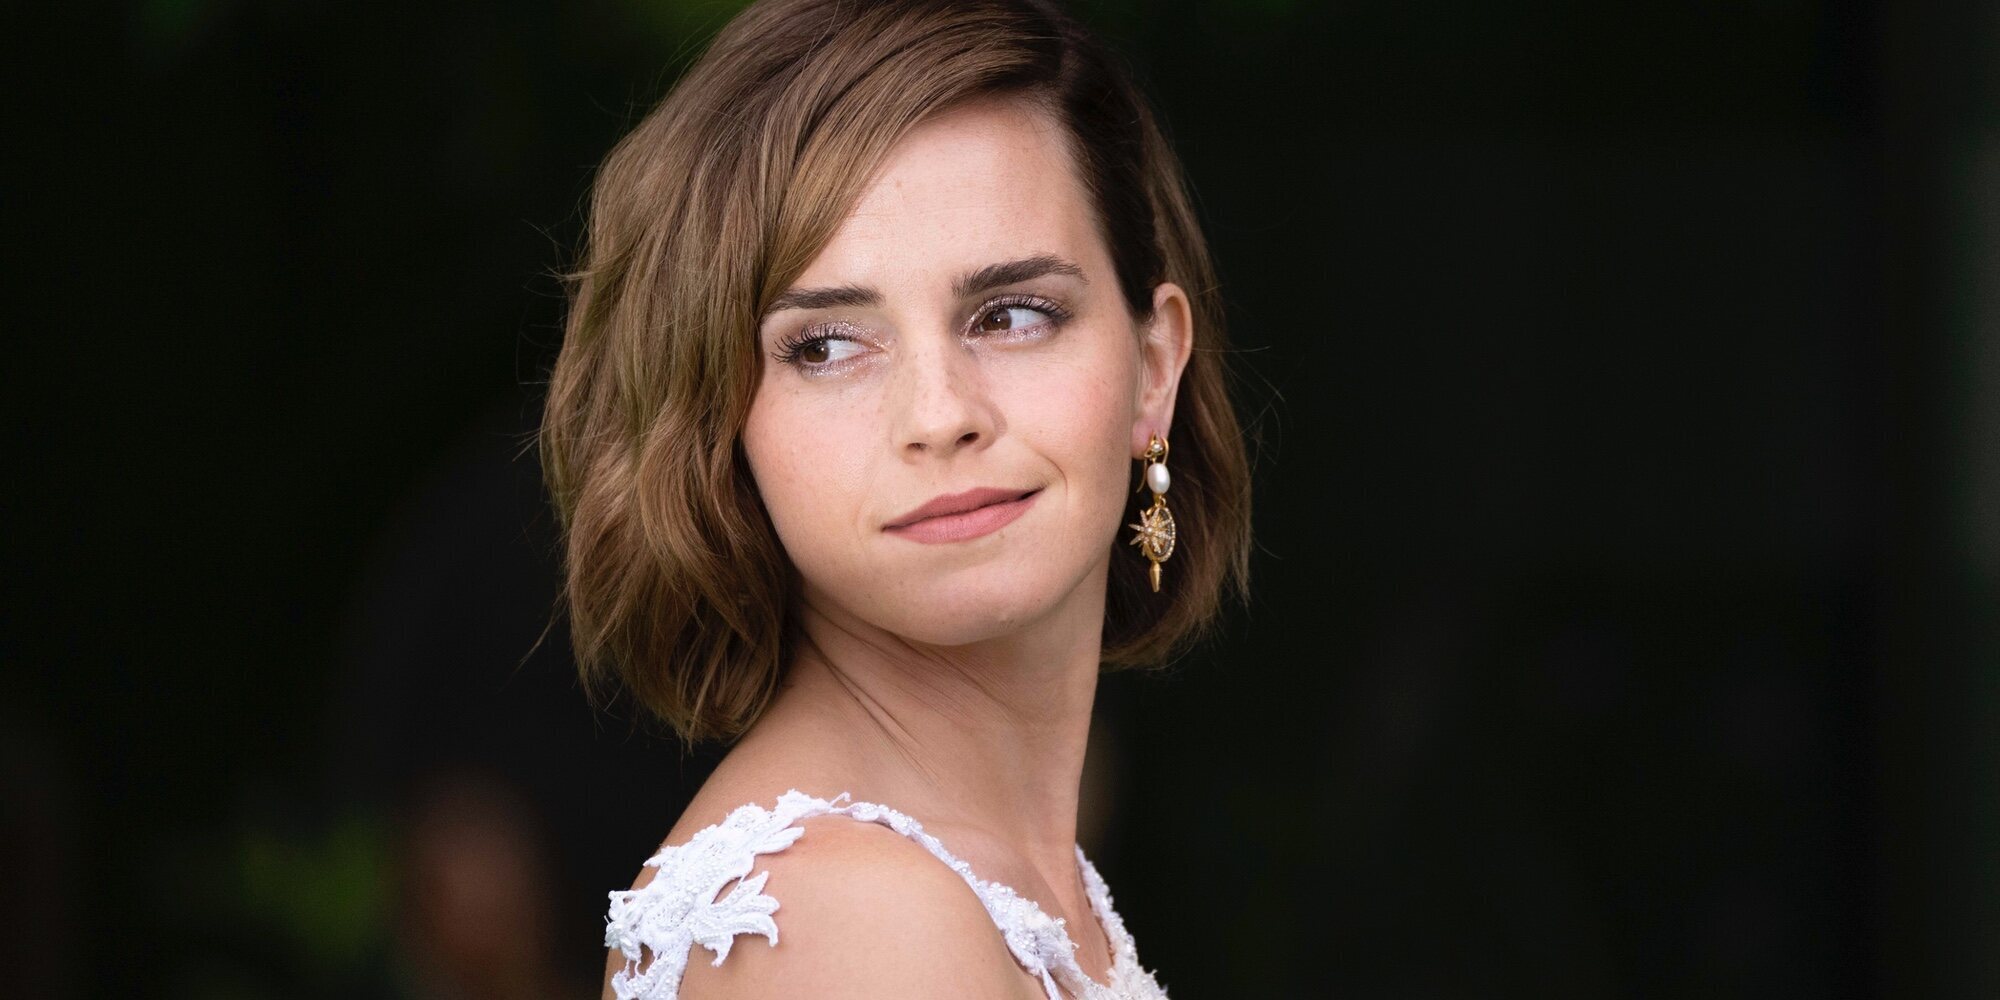 El regreso de Emma Watson a una alfombra roja tras casi dos años desaparecida y una retirada temporal